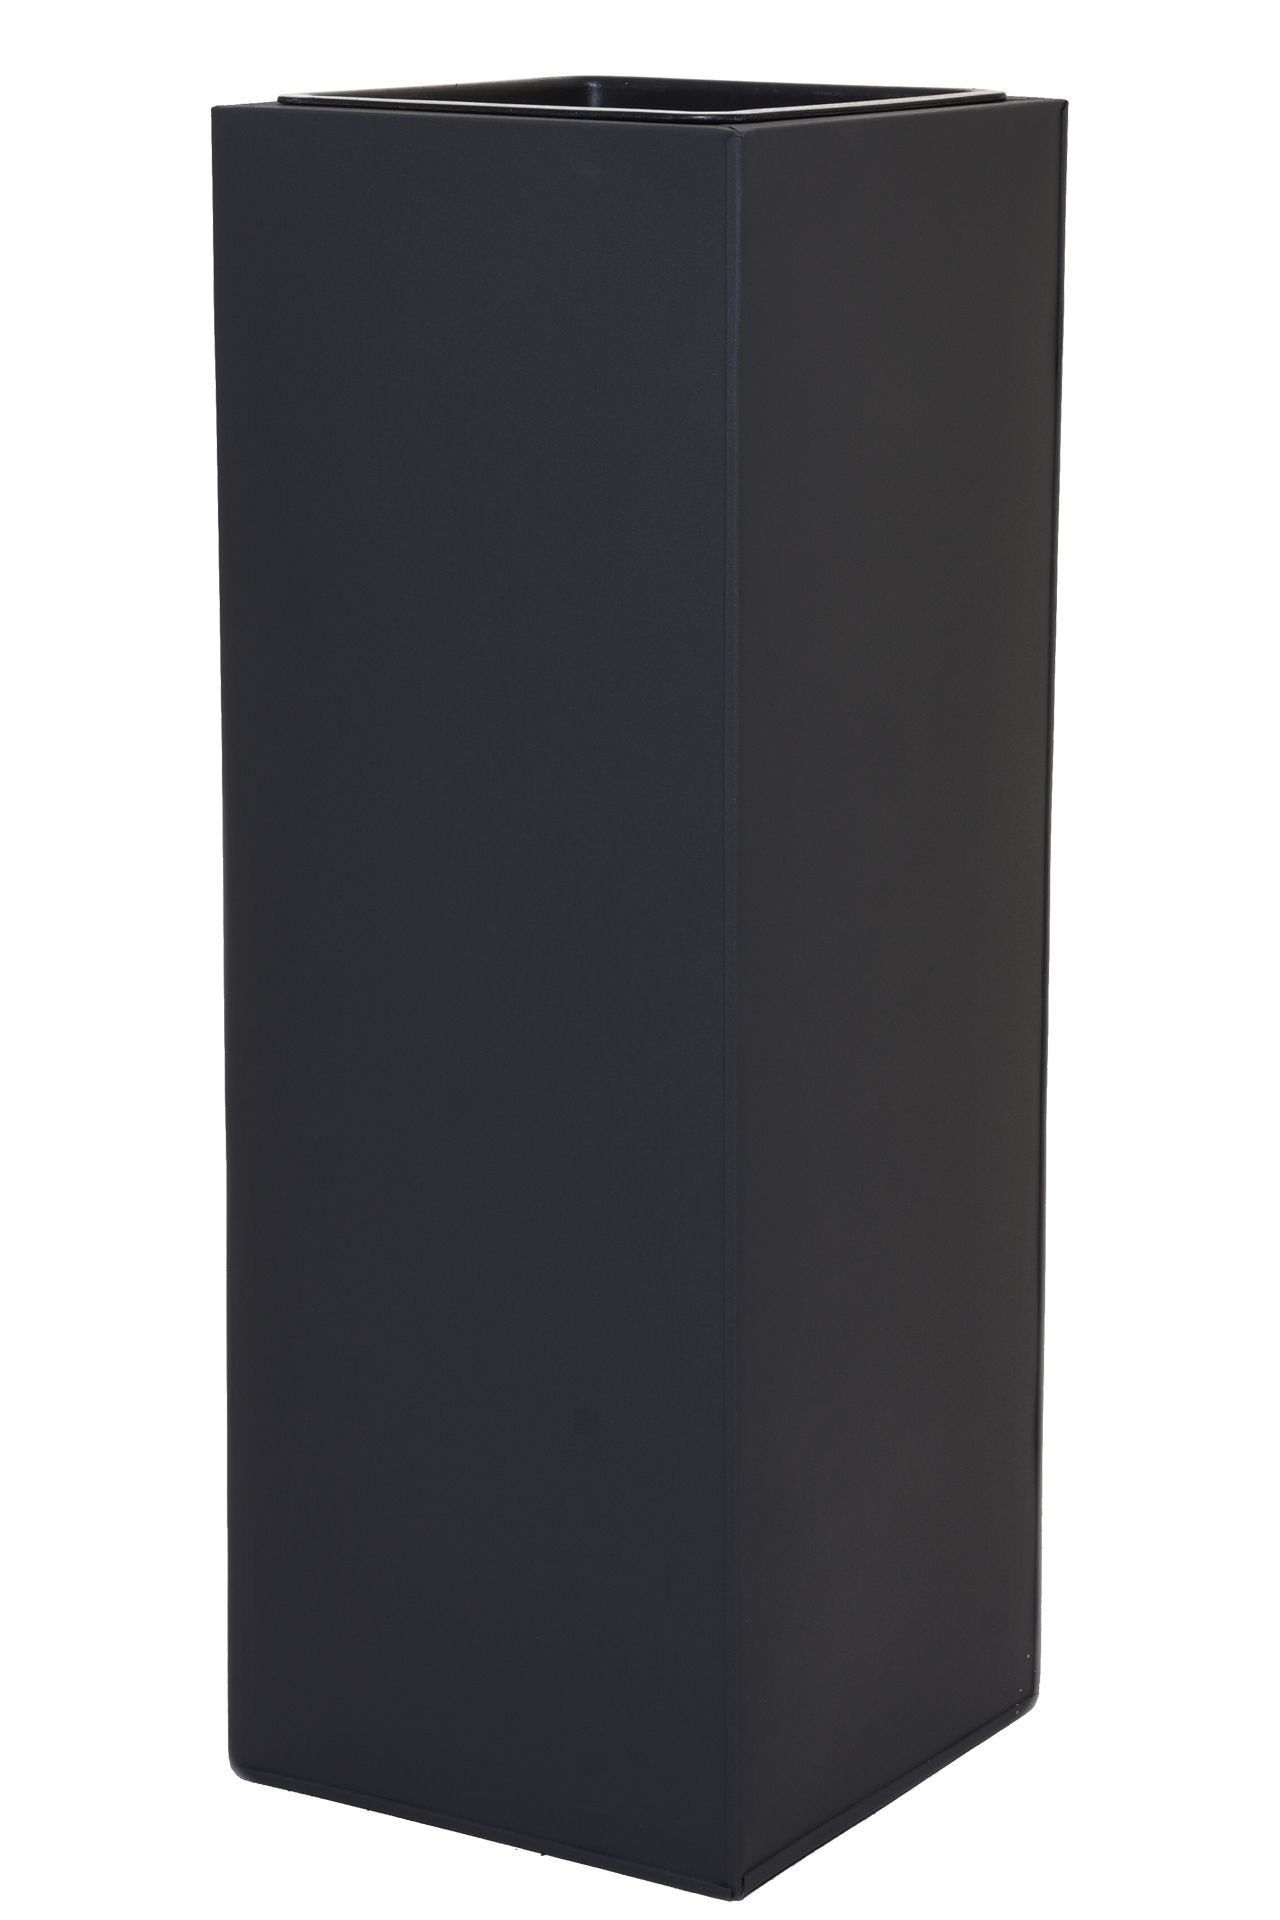 VIVANNO Pflanzkübel Pflanzkübel Blumenkübel Zink "Block", Anthrazit - 24x24x65 cm (mit